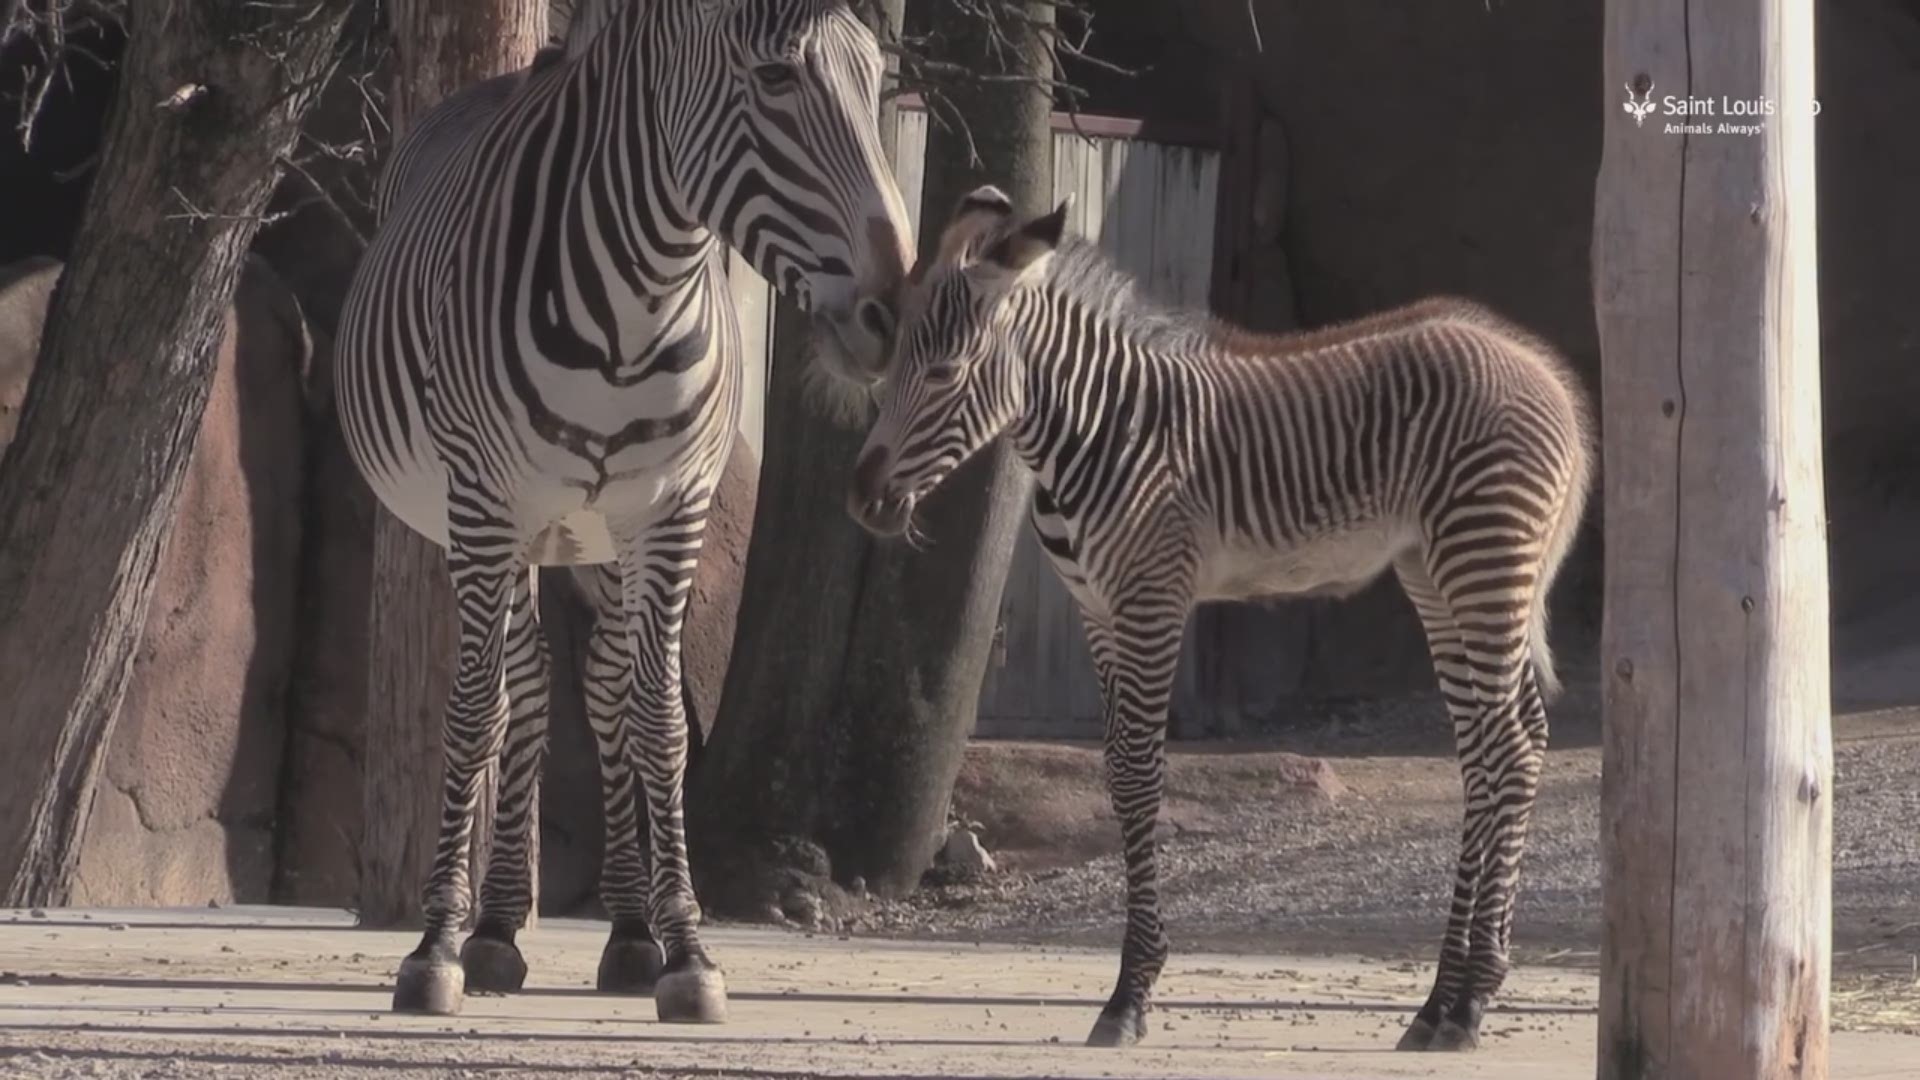 St. Louis Zoo welcomes new zebra | www.speedy25.com